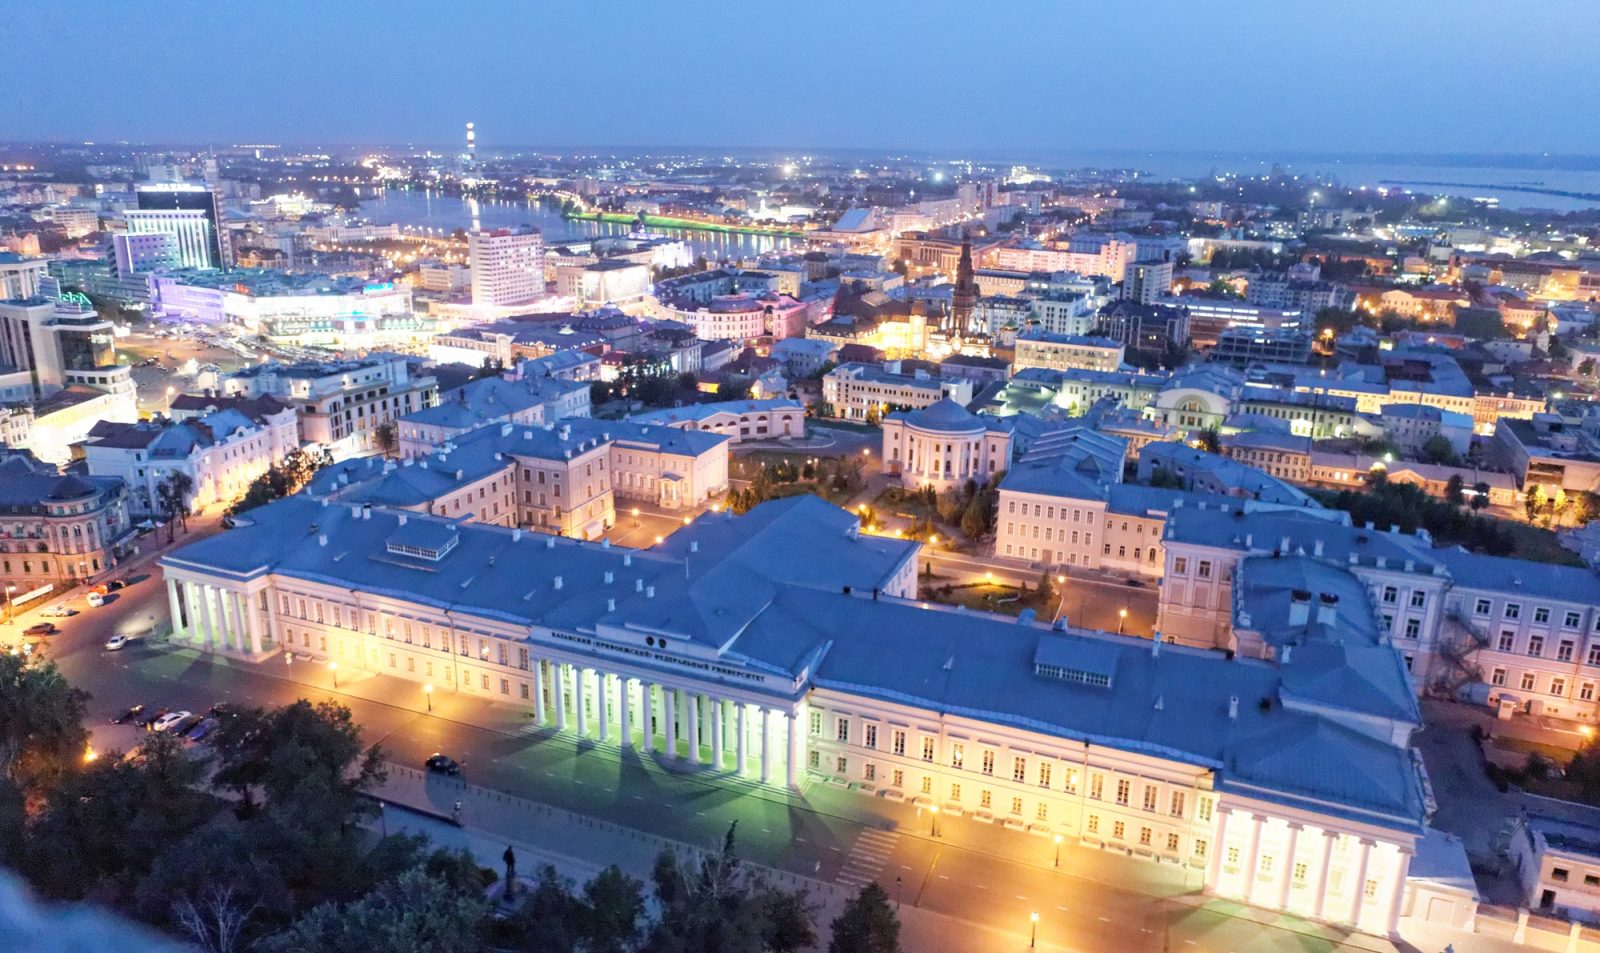 Kedudukan universiti terbaik di Kazan pada tahun 2020